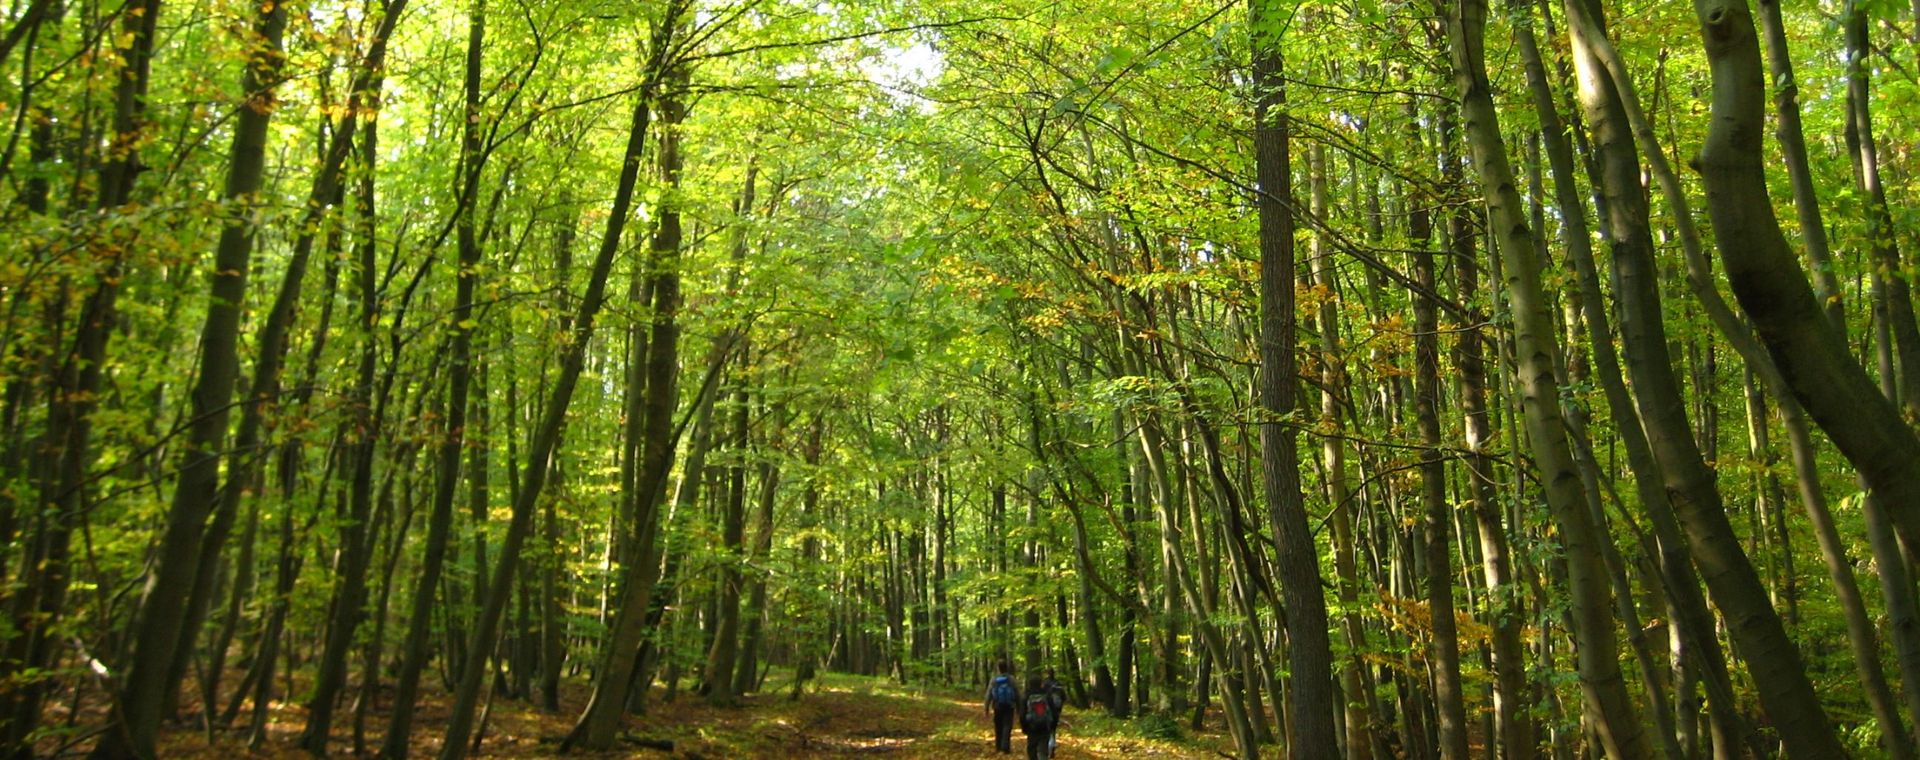 zwei Wanderer im Wald des Nationalpark Hainich